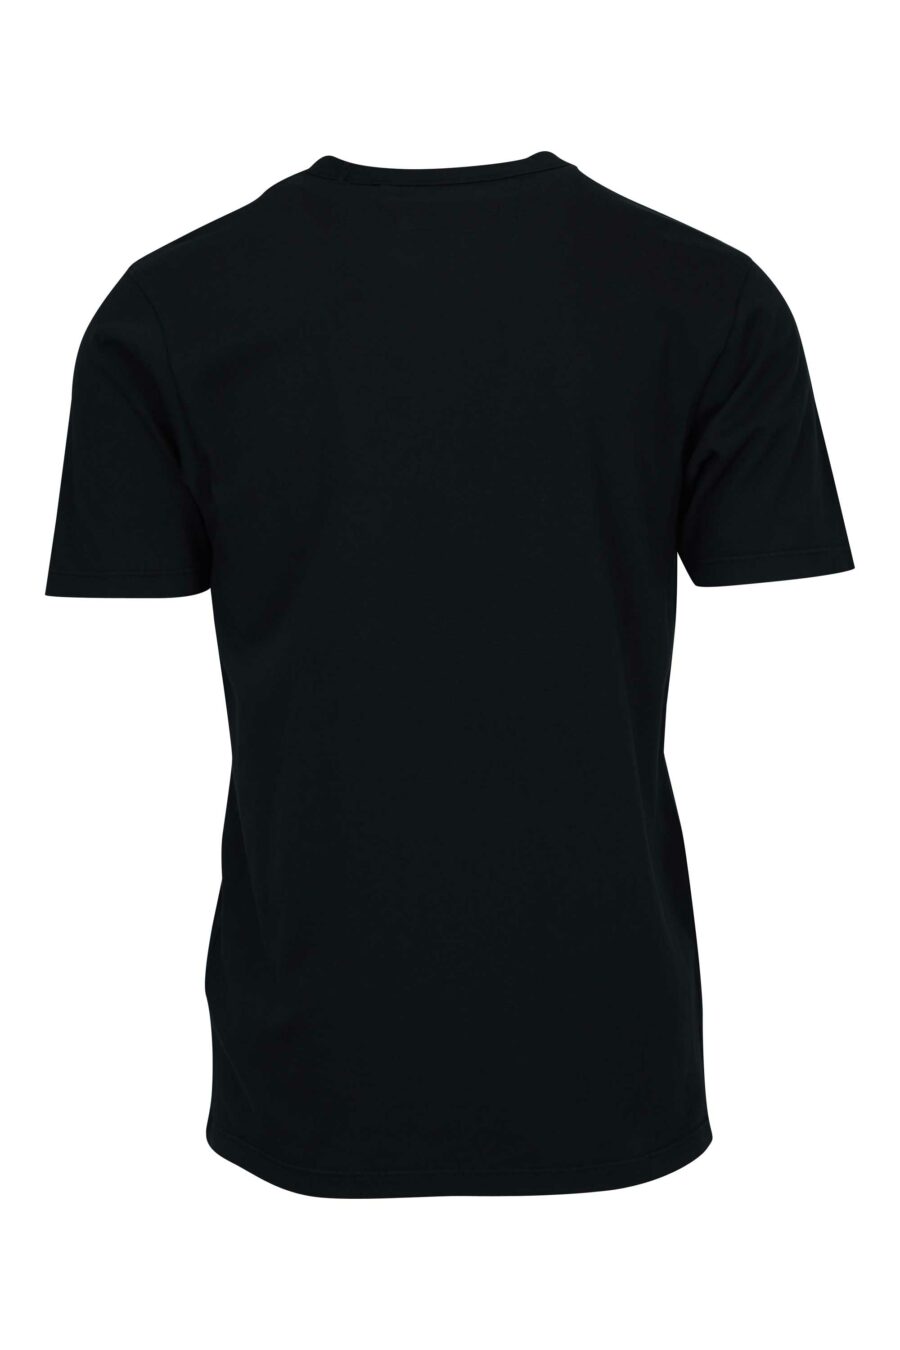 Camiseta negra con bolsillos y minilogo "cp" - 7620943767025 1